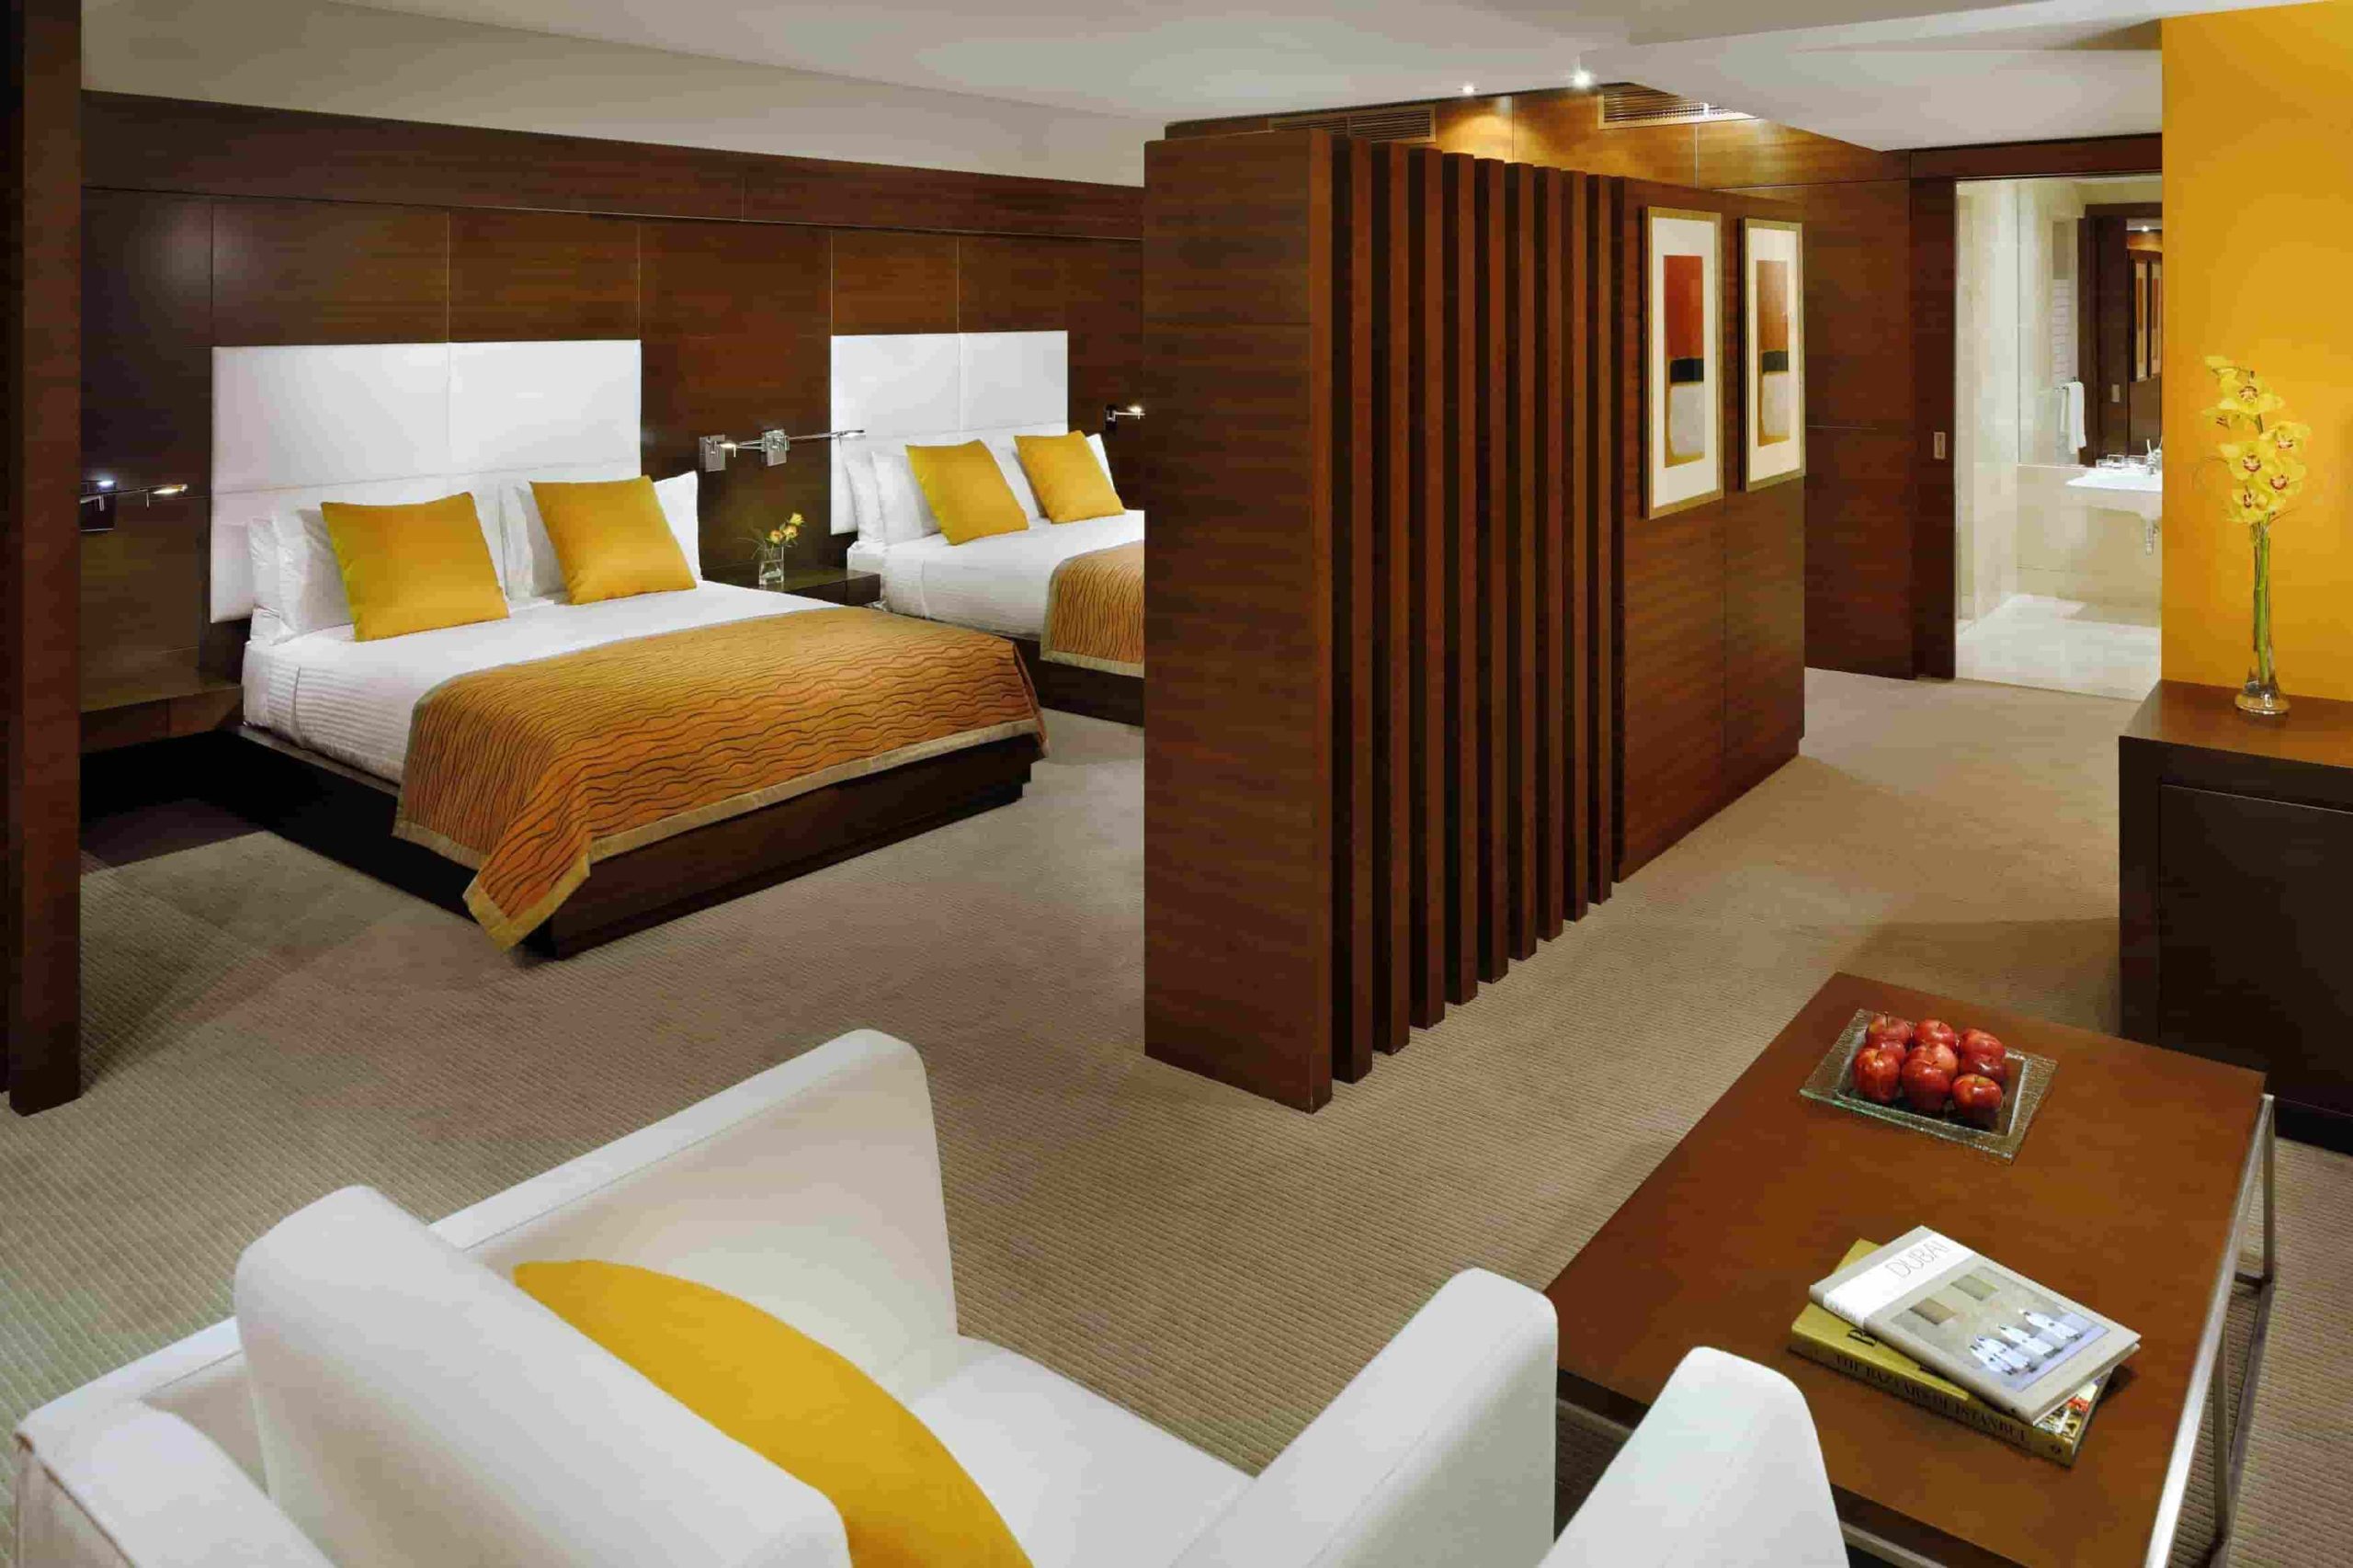 Upgrade Your Bedroom Furniture in Dubai - Unbelievable Deals Await!